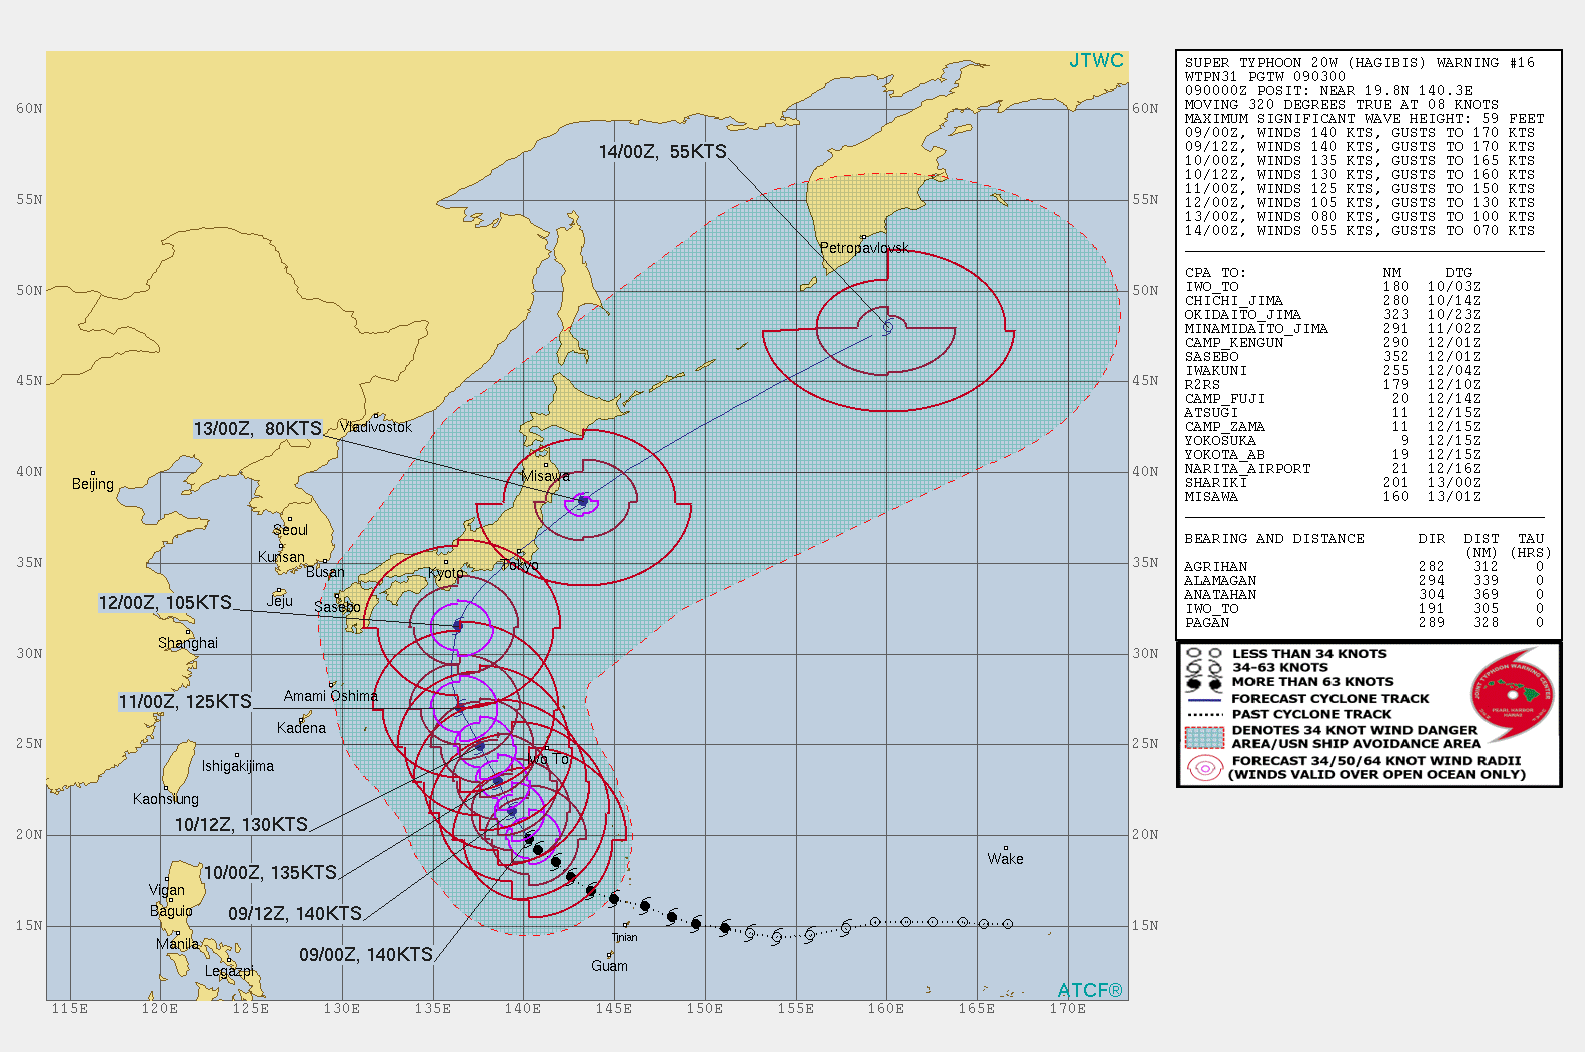 joint typhoon center